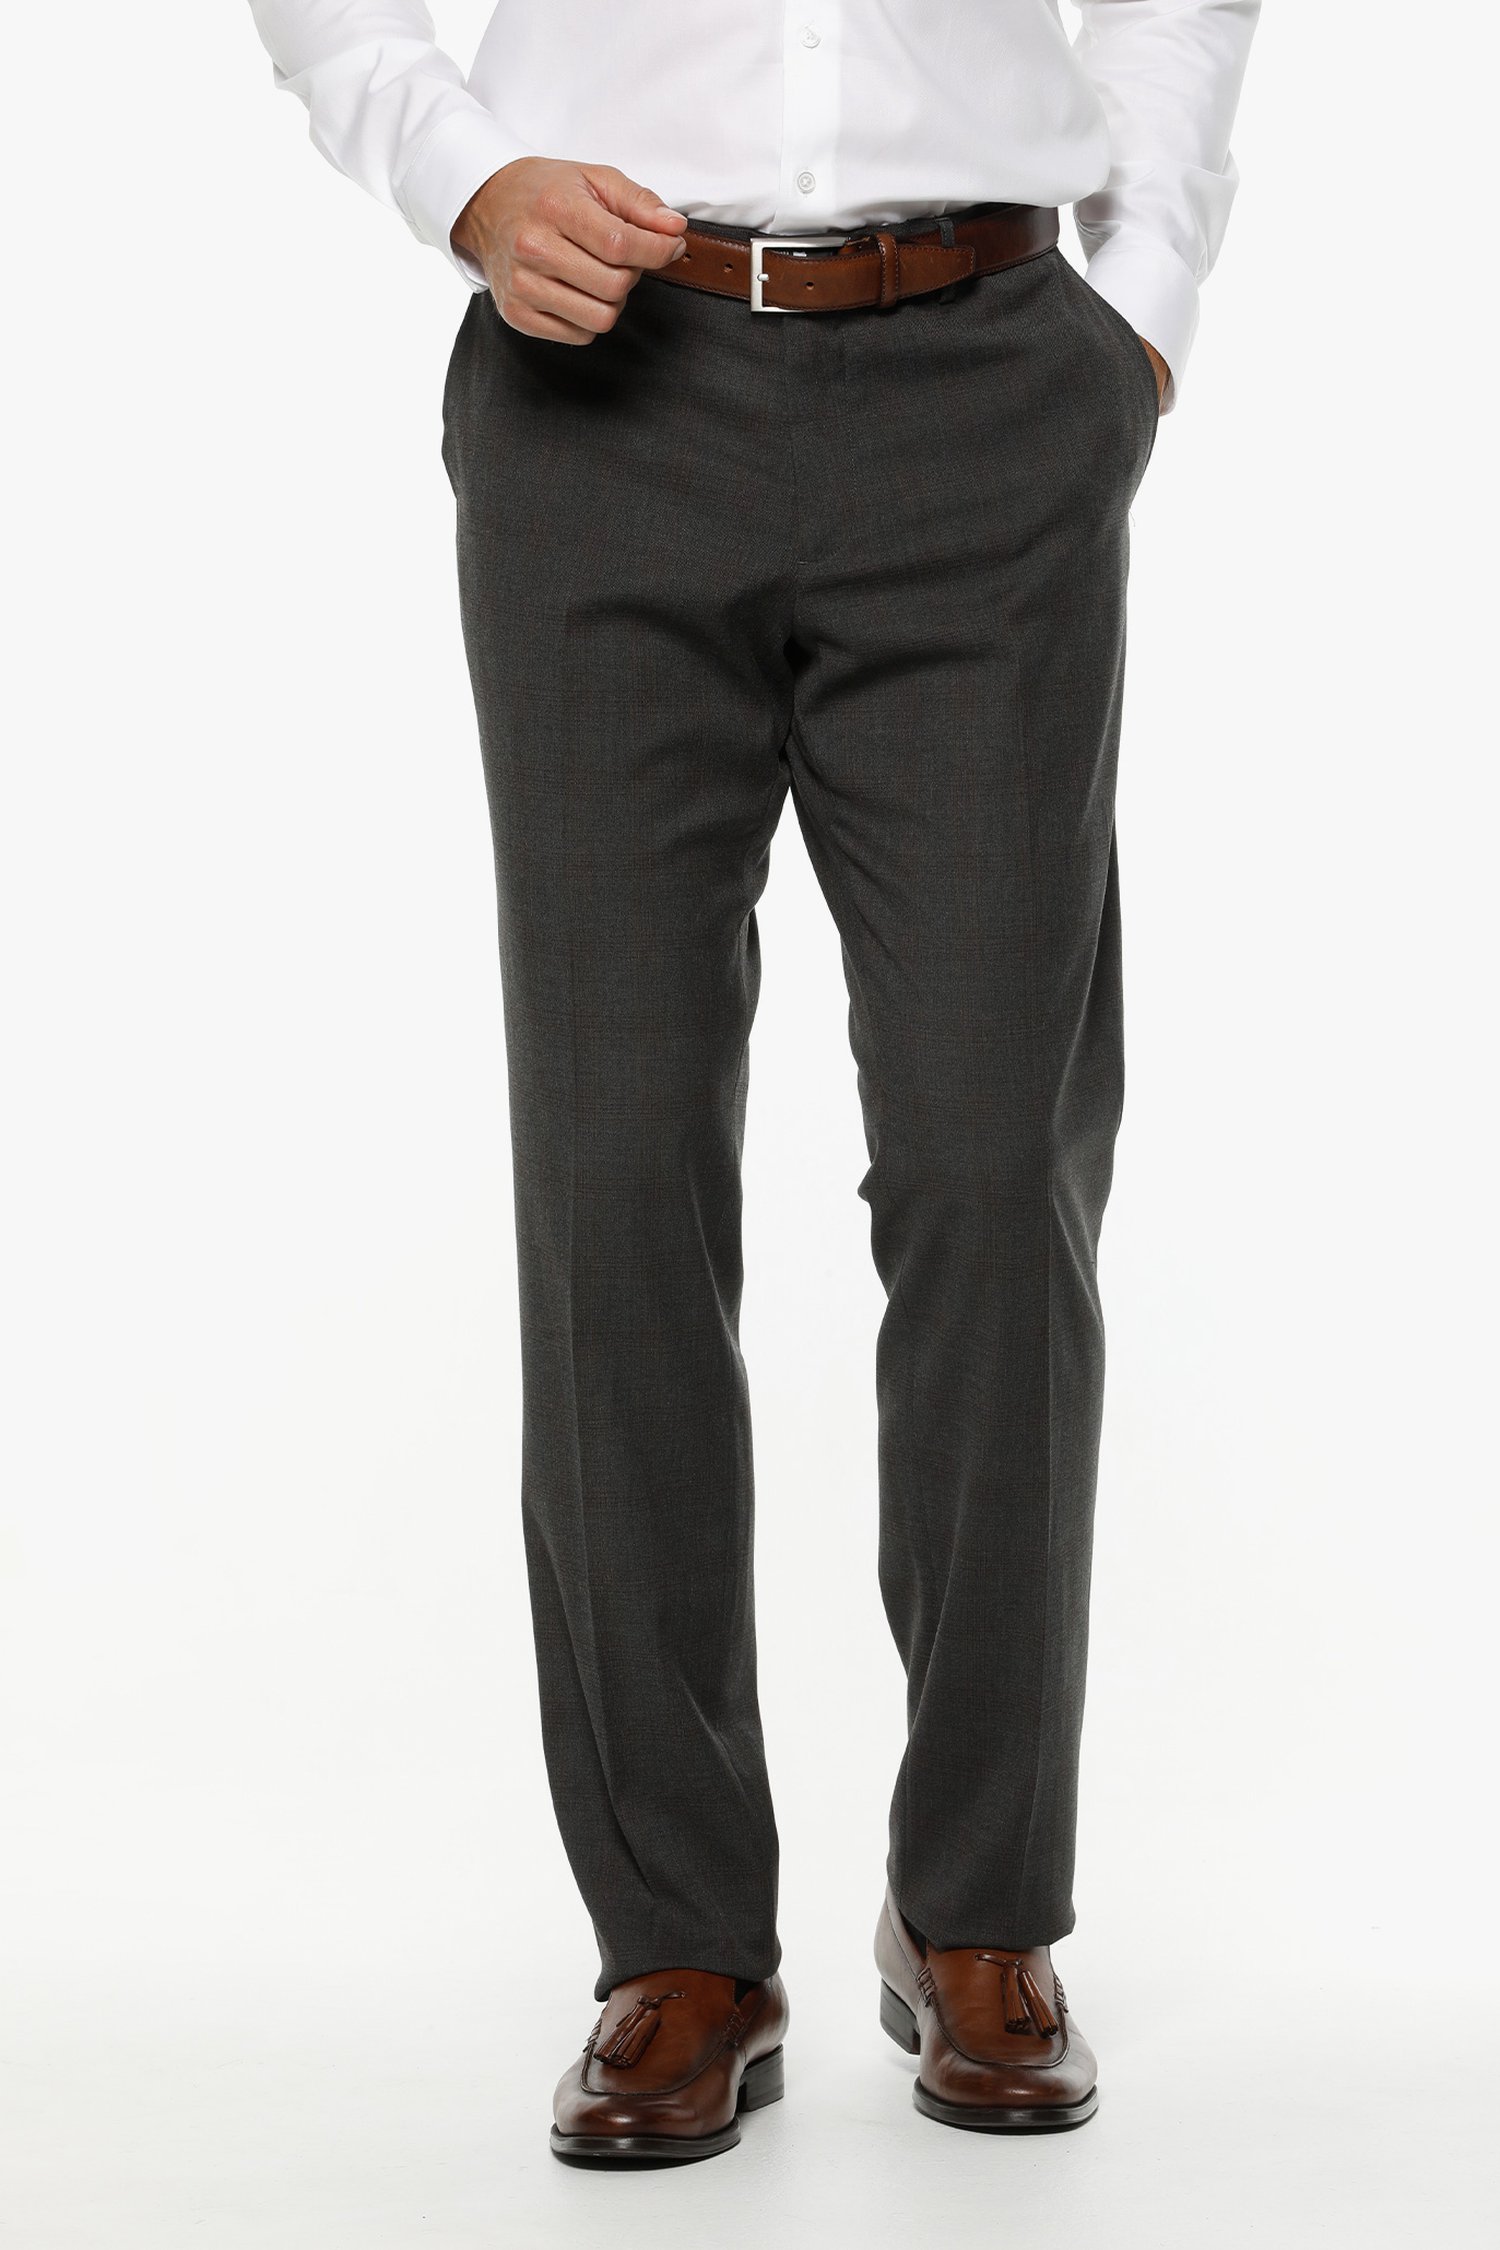 Pantalon costume anthracite - Cable - comfort fit de Dansaert Black pour Hommes